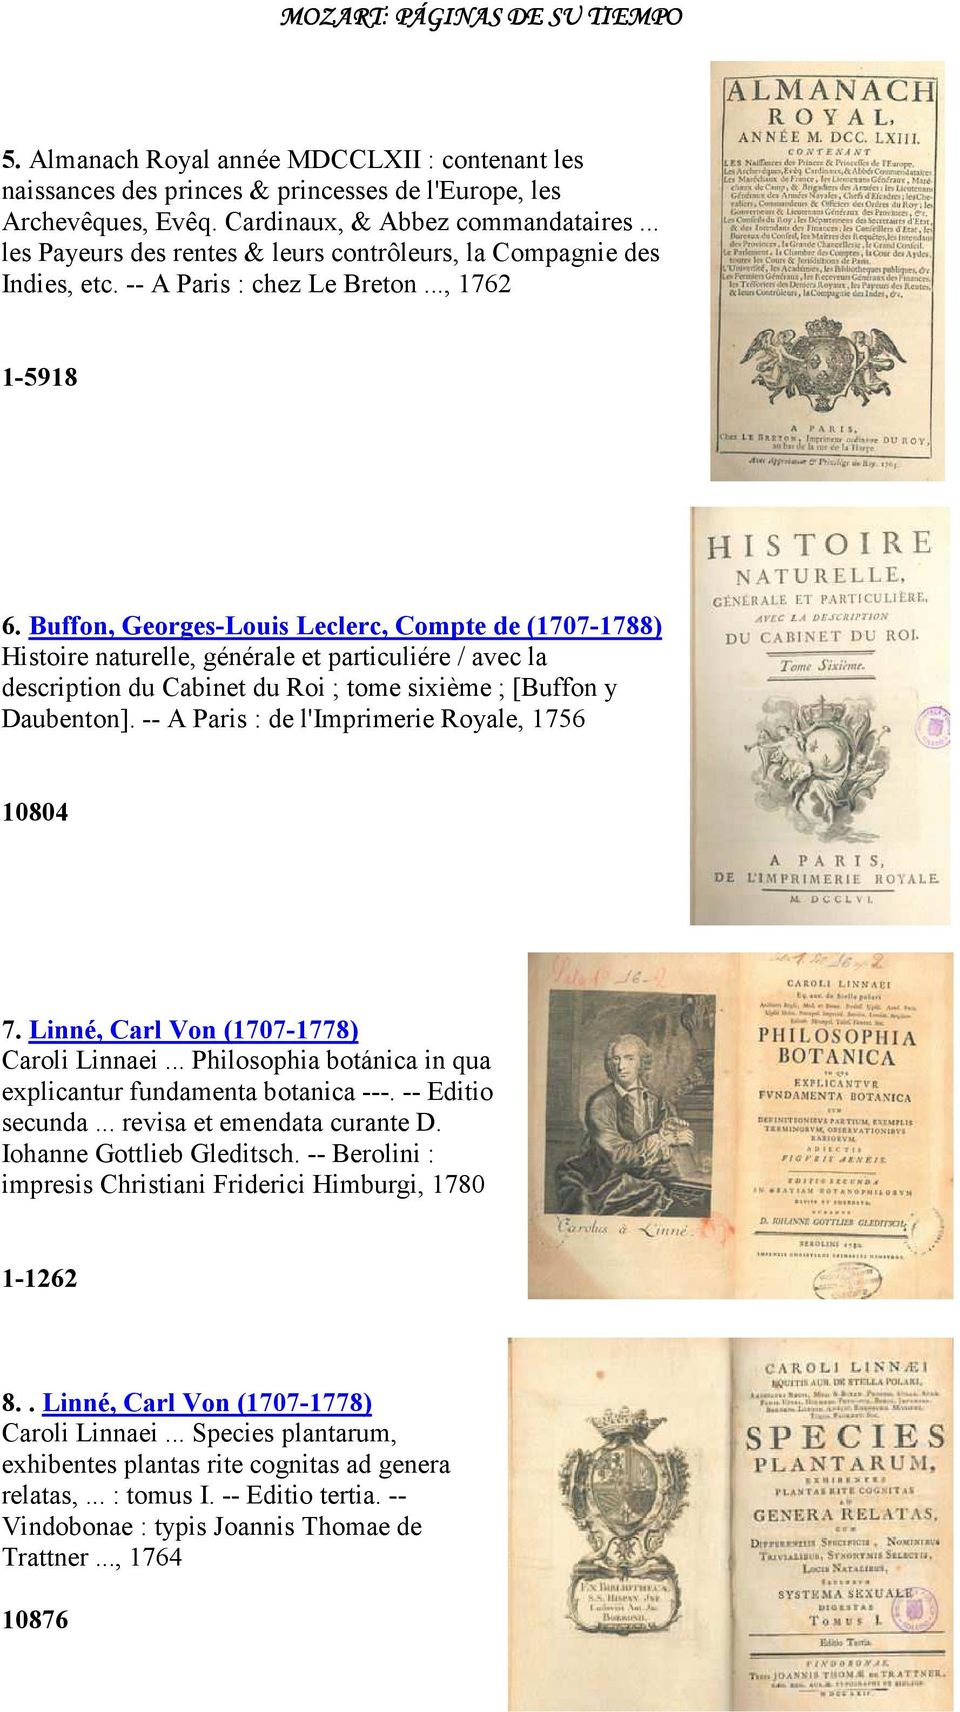 Buffon, Georges-Louis Leclerc, Compte de (1707-1788) Histoire naturelle, générale et particuliére / avec la description du Cabinet du Roi ; tome sixième ; [Buffon y Daubenton].